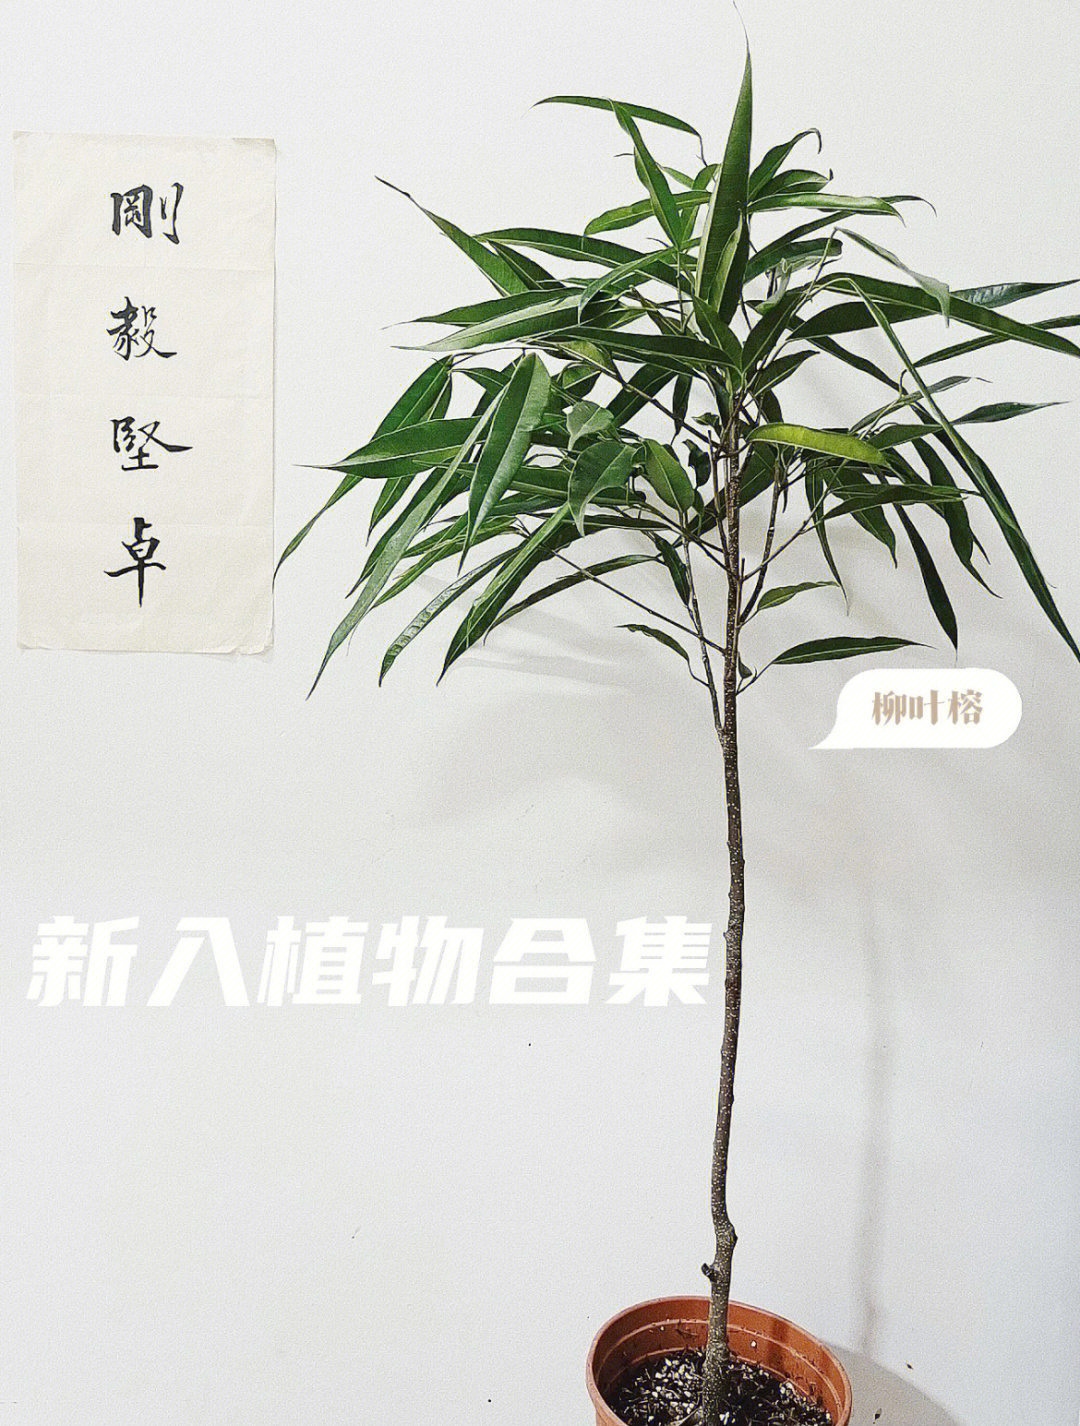 曾经看到一个韩国博主家里放了一棵柳叶榕,造型颇有有竹子的清雅坚韧